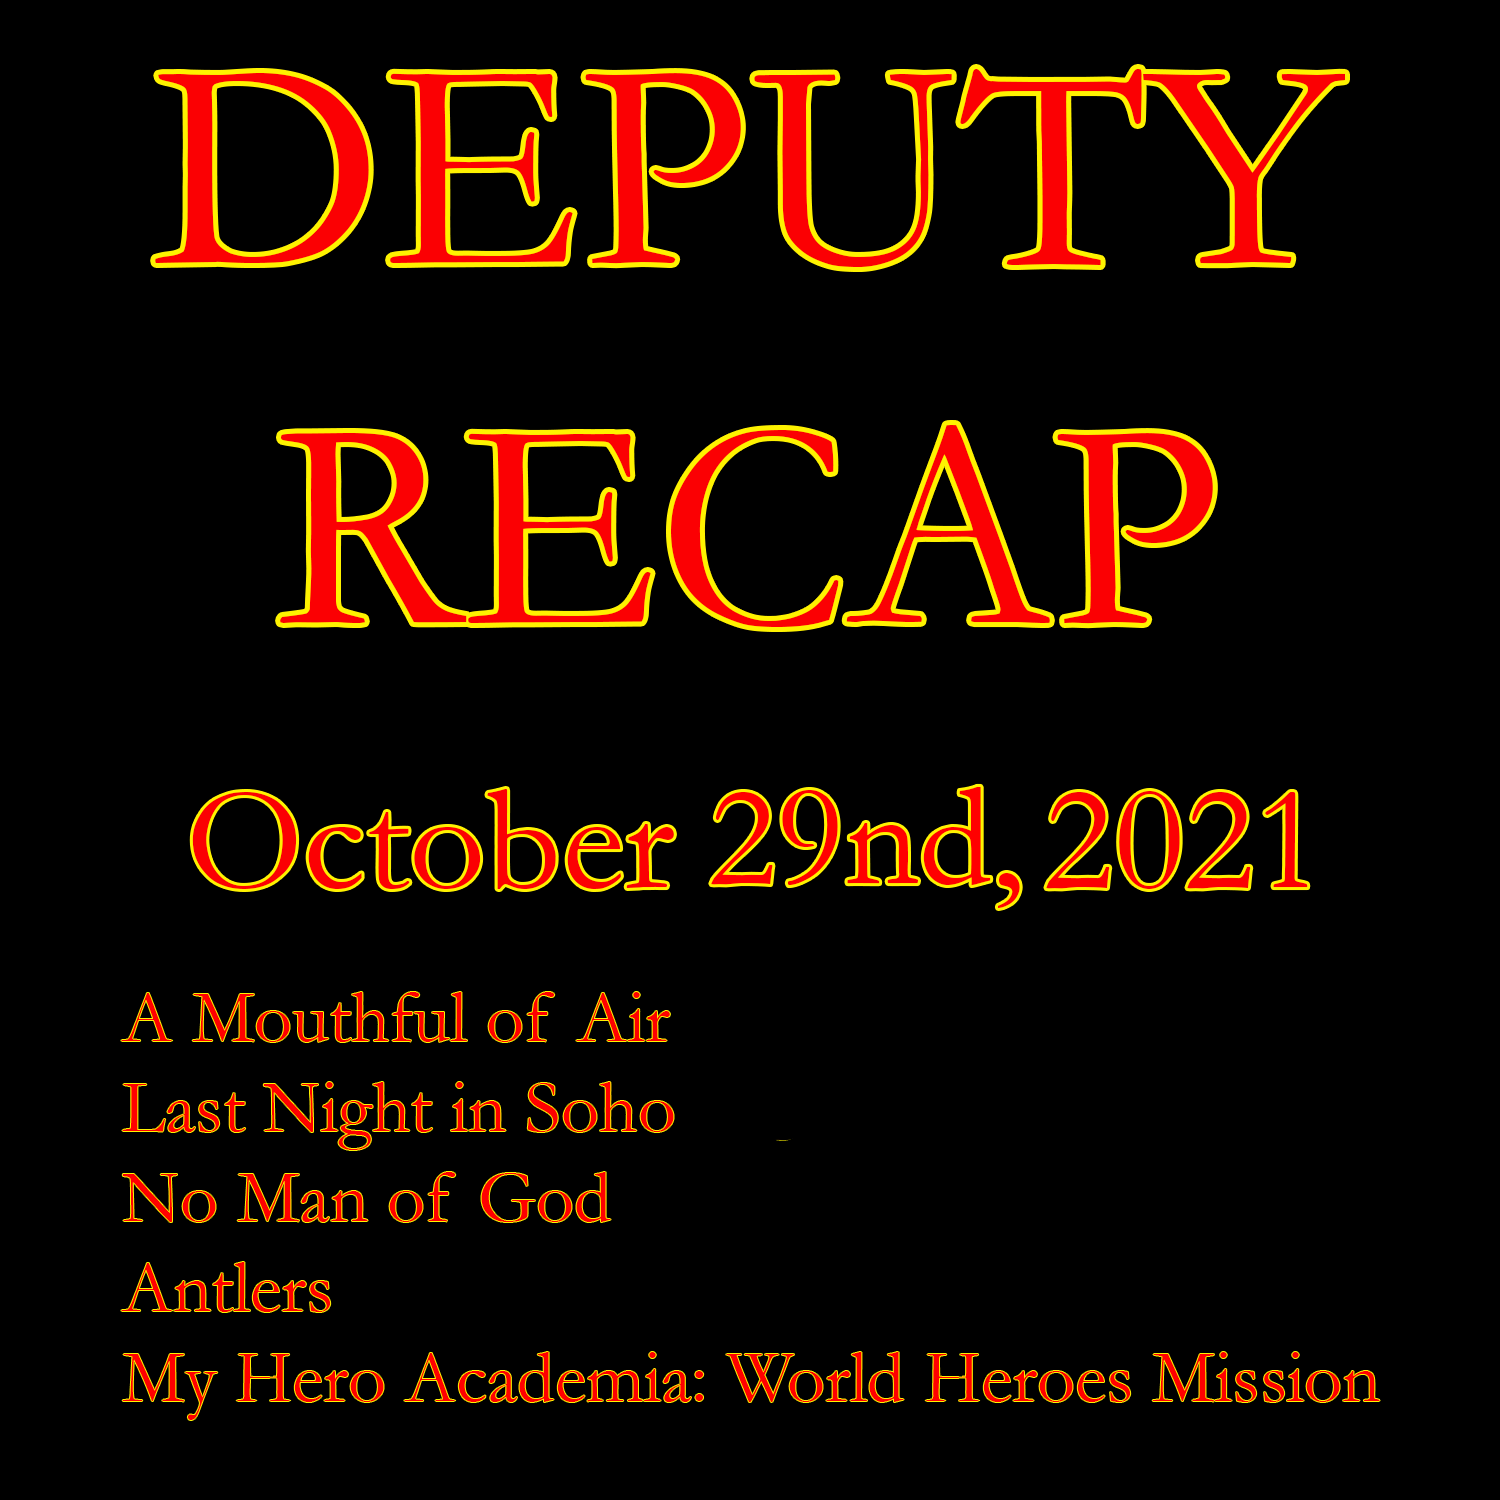 Recap - October 29th, 2021